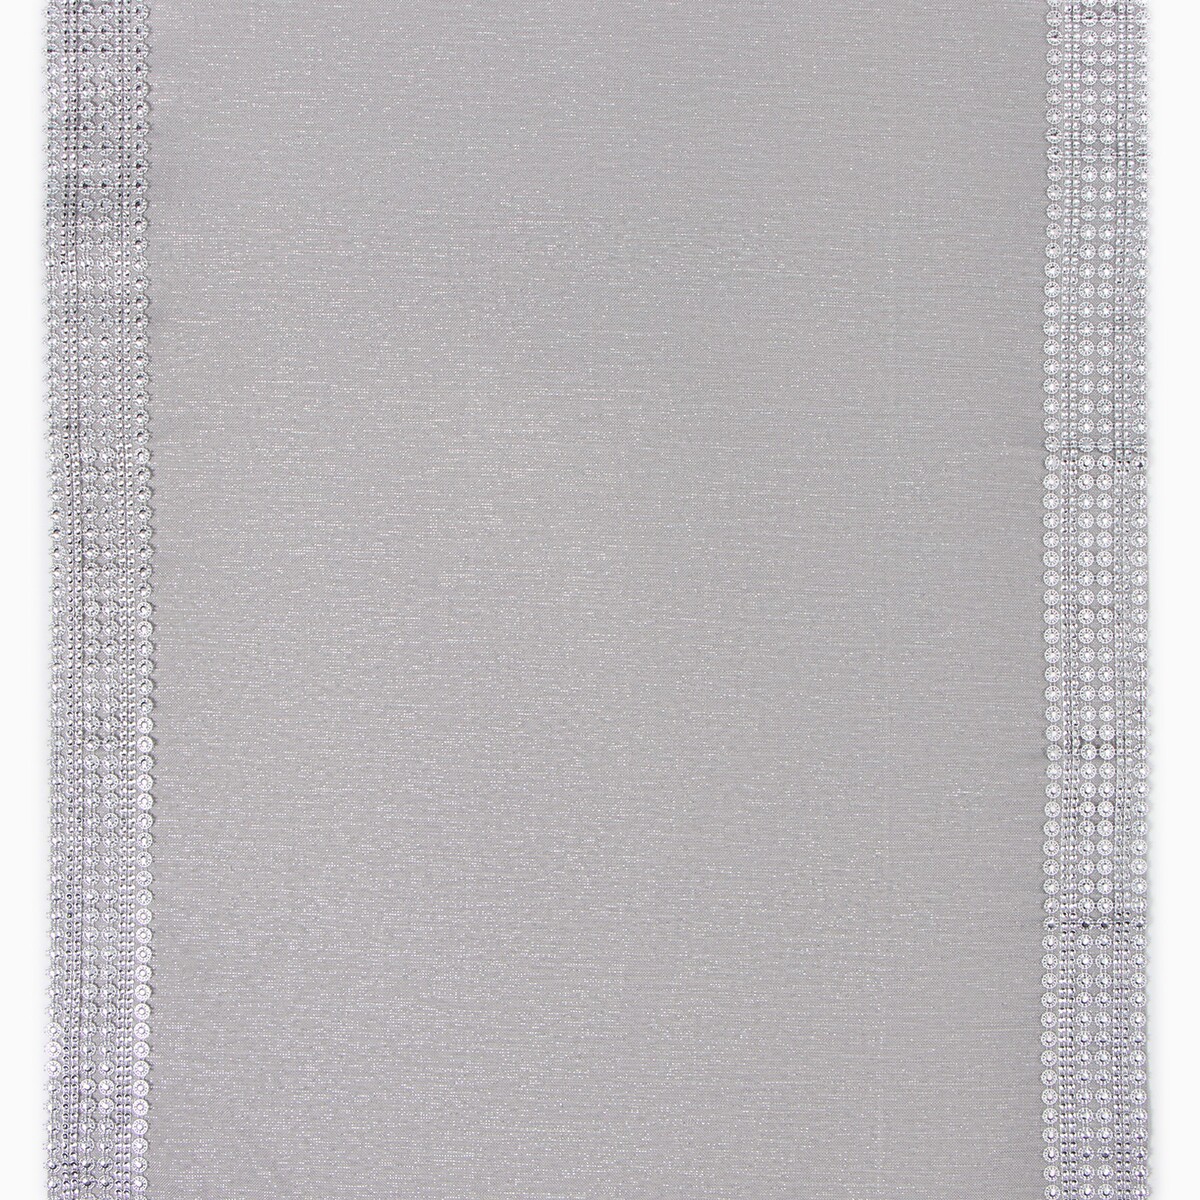 Дорожка Этель, цвет серый, размер 60х120 см 06289862 - фото 4